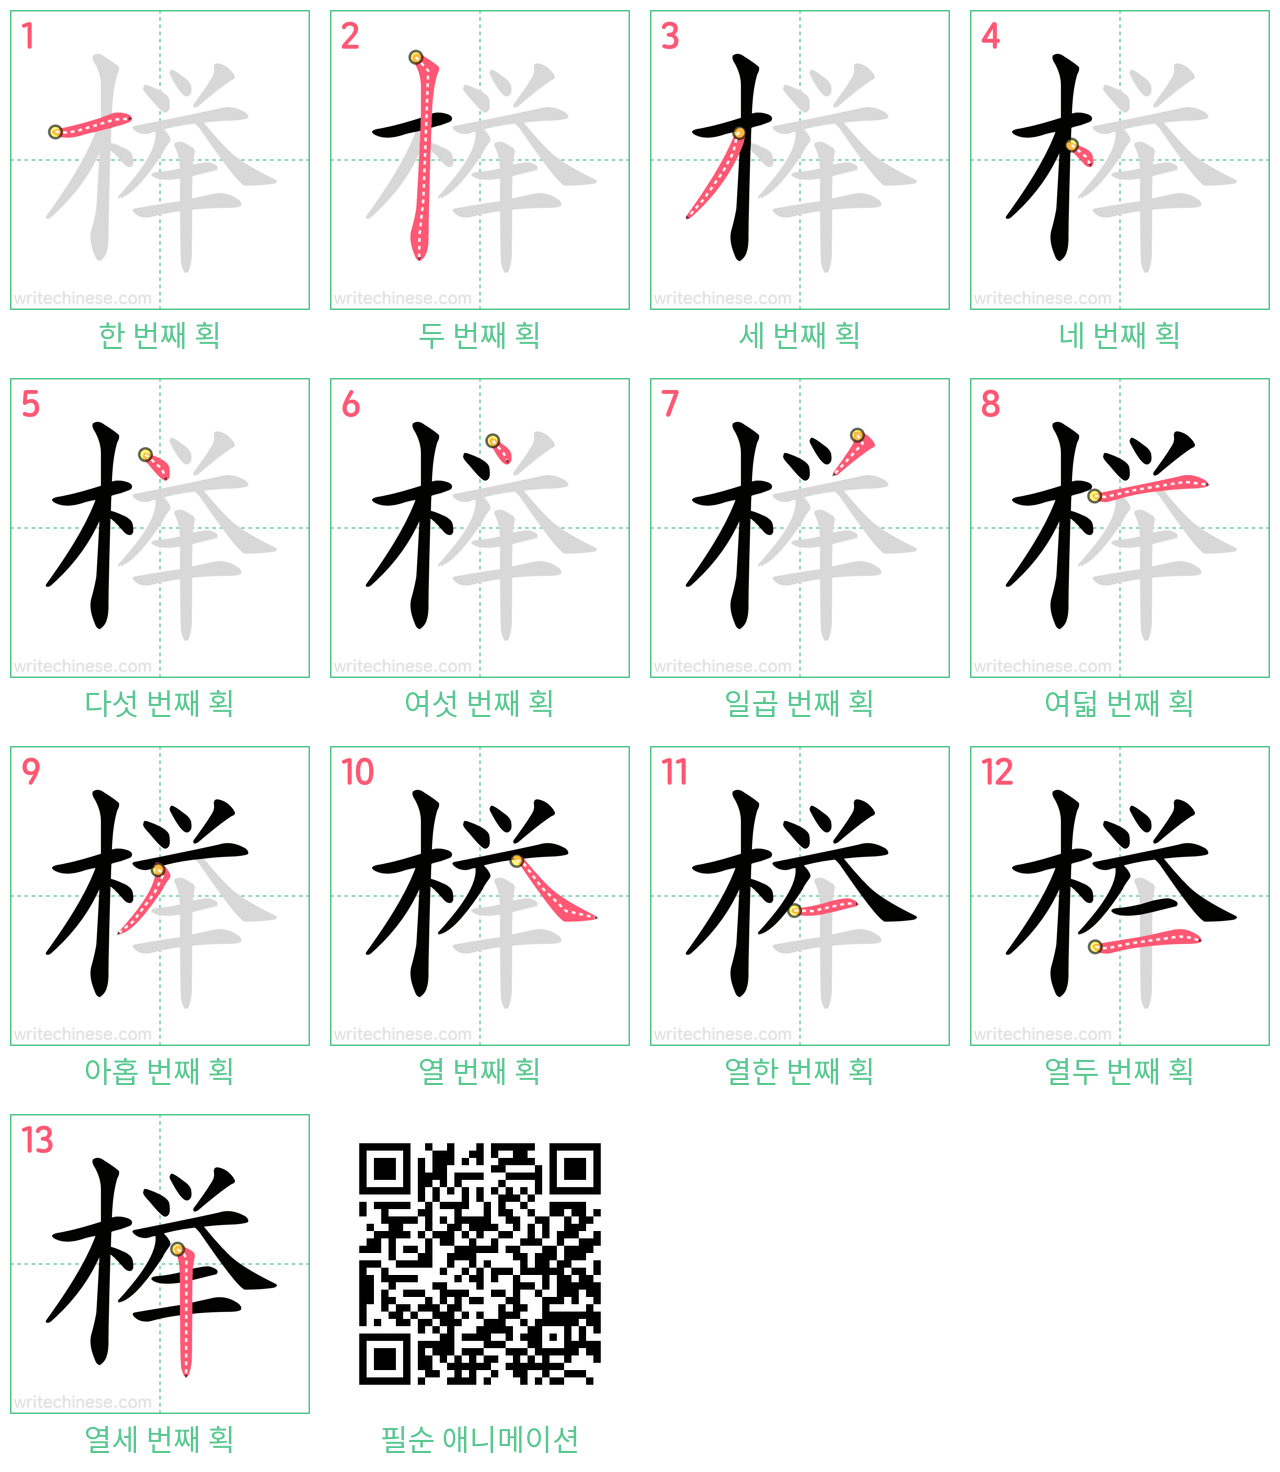 榉 step-by-step stroke order diagrams